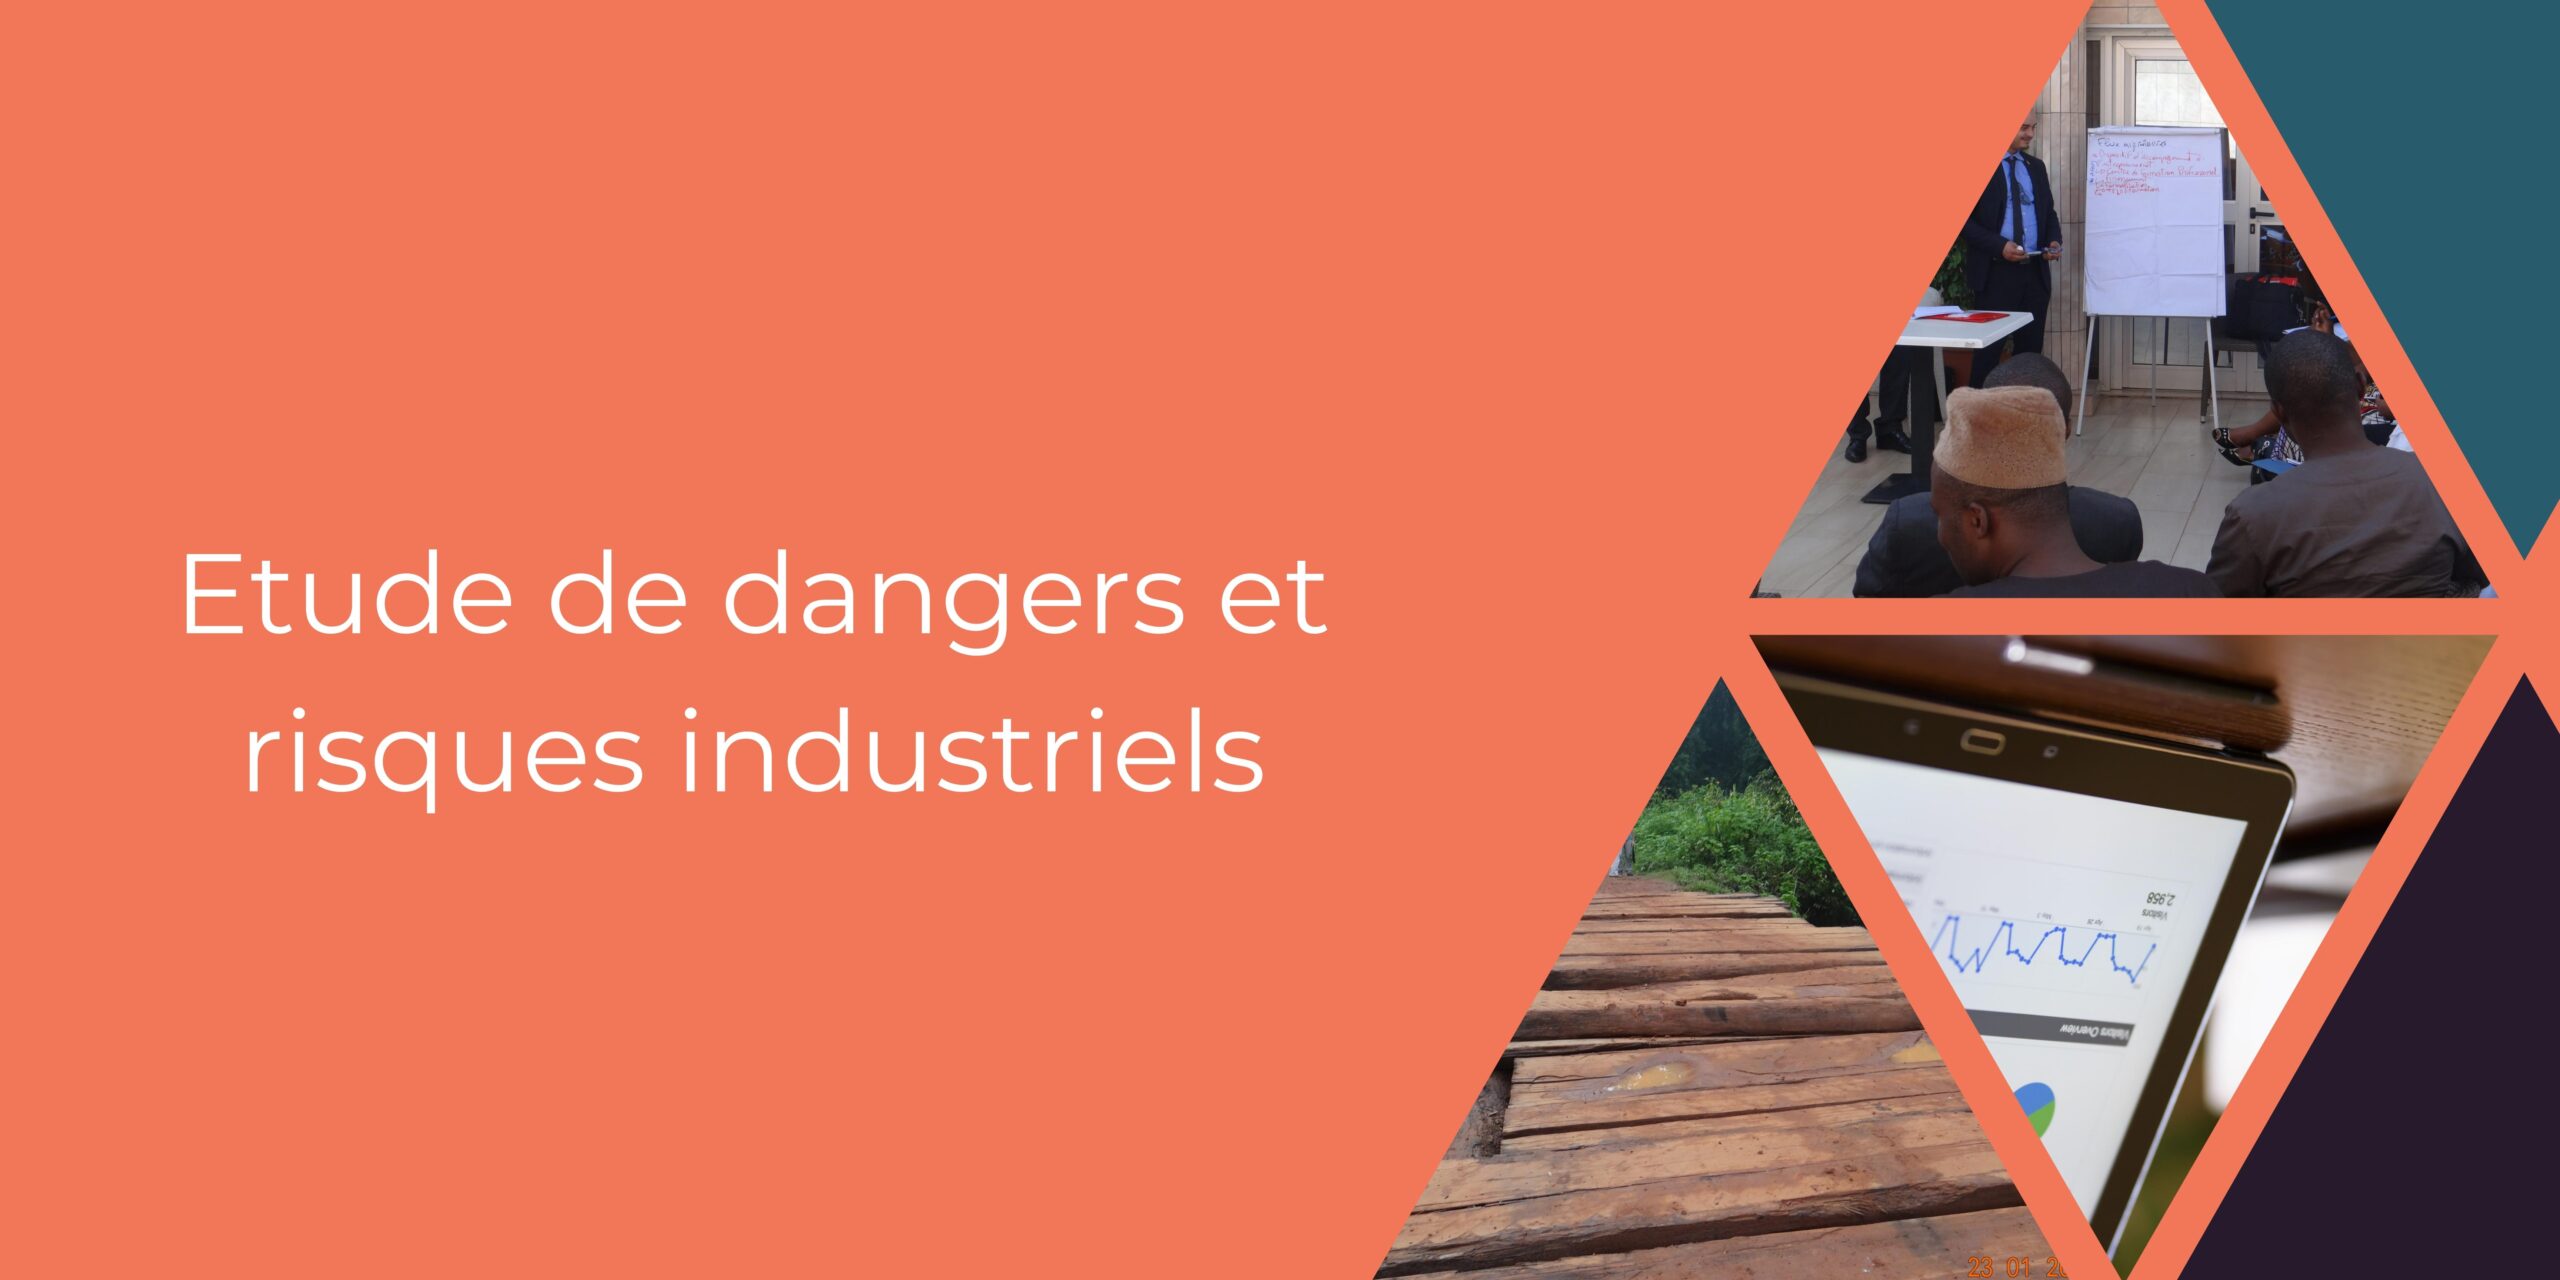 Etude de dangers et risques industriels